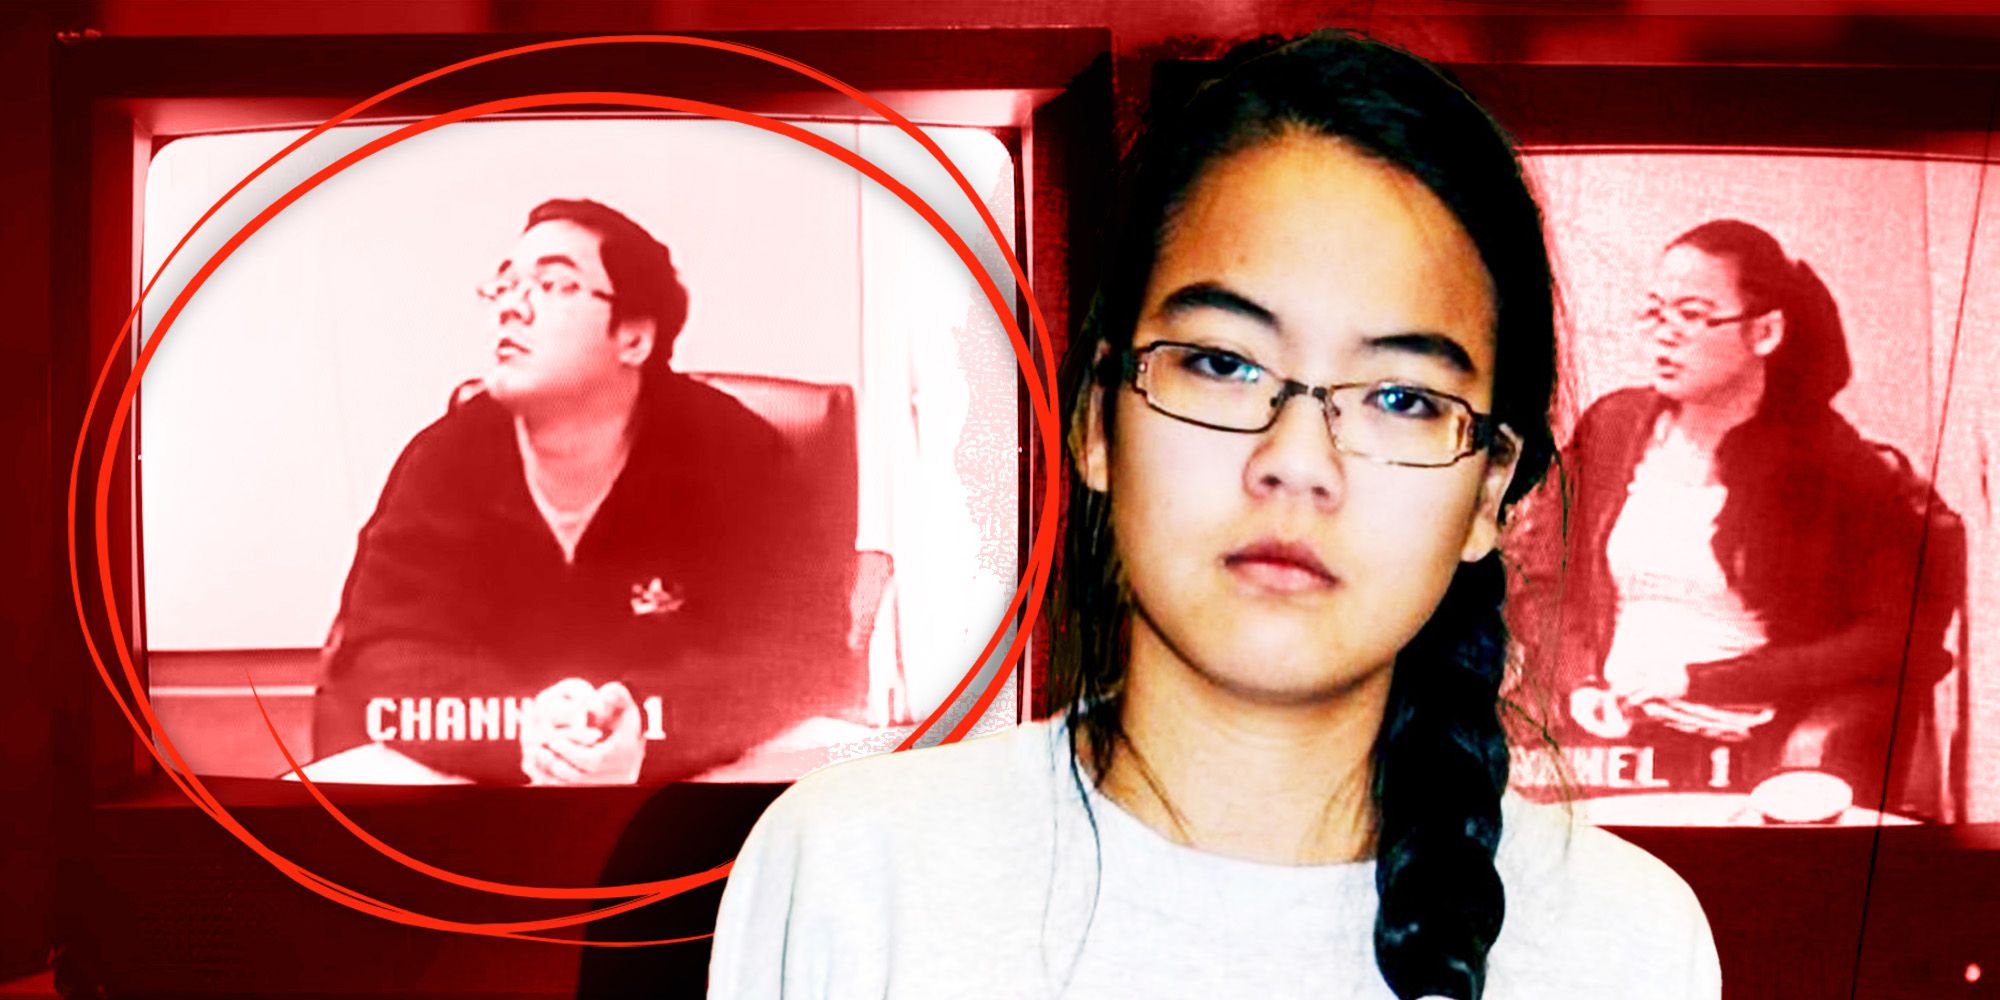 Lo que hizo Jennifer: quién es Danny Wong y por qué ayudó a organizar los asesinatos de los padres de Jennifer